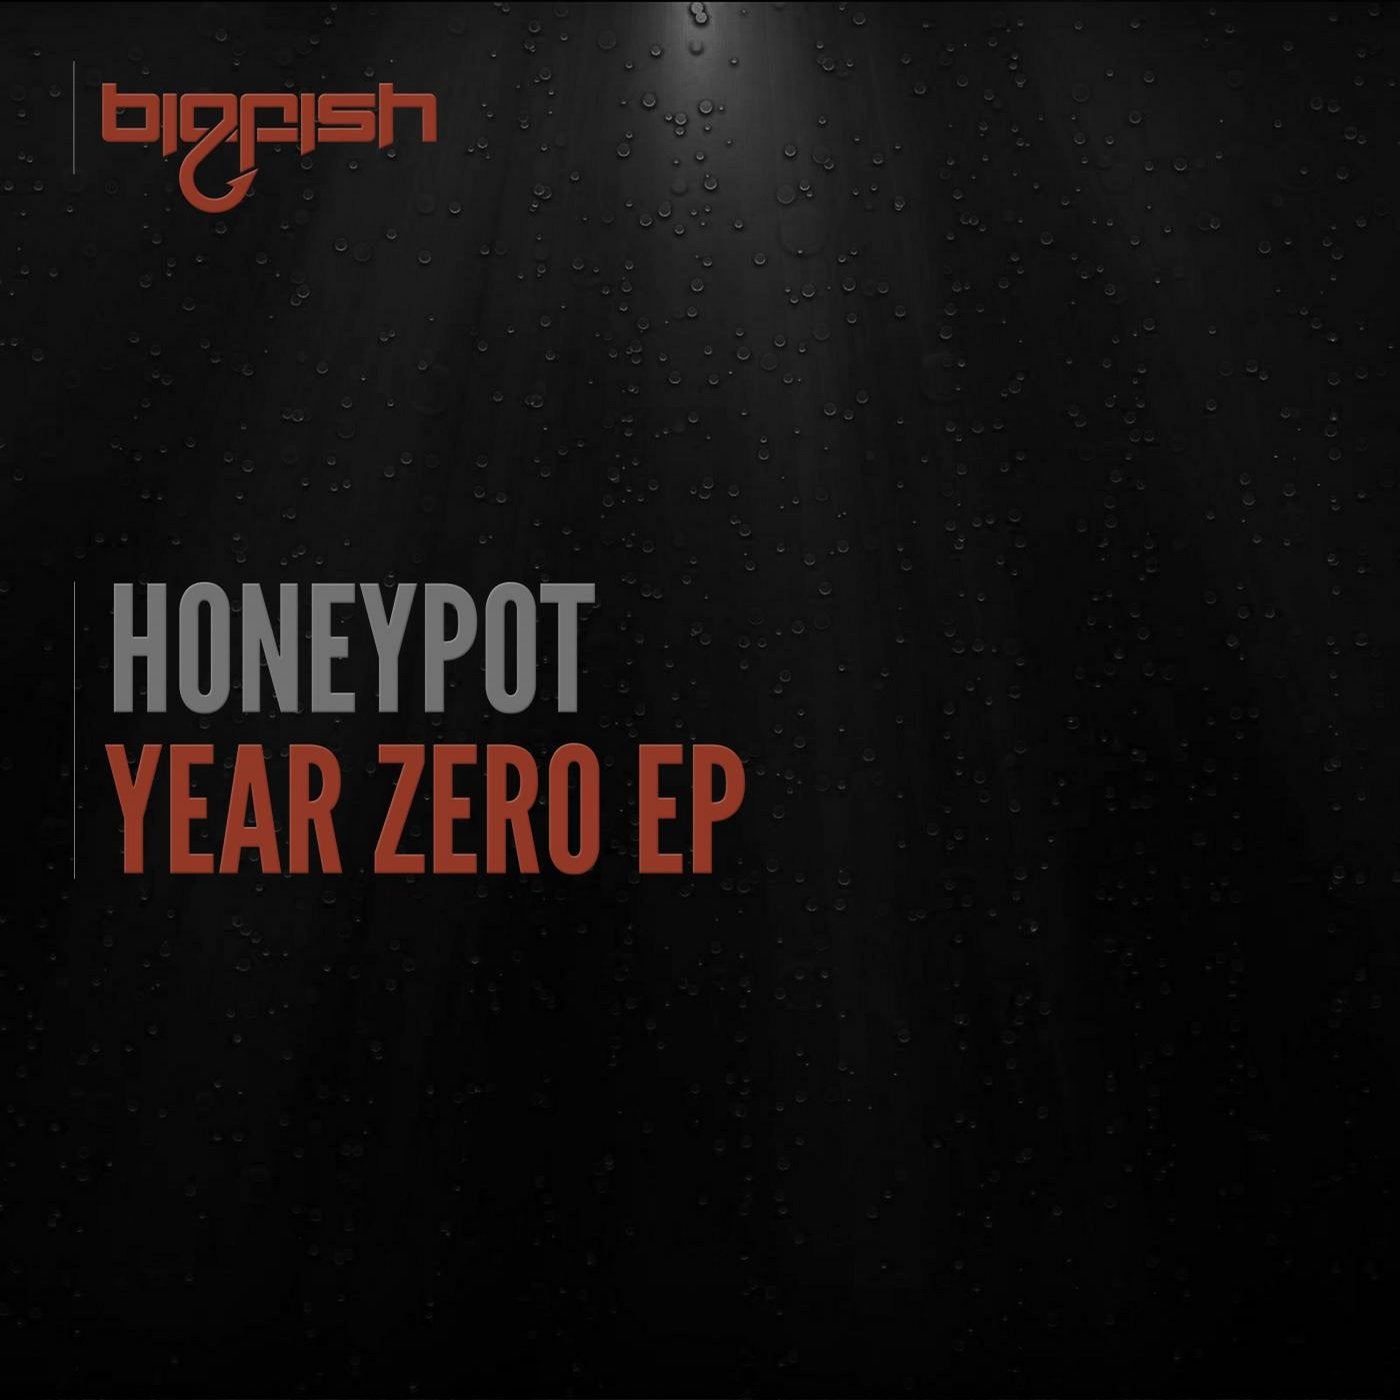 Year Zero EP